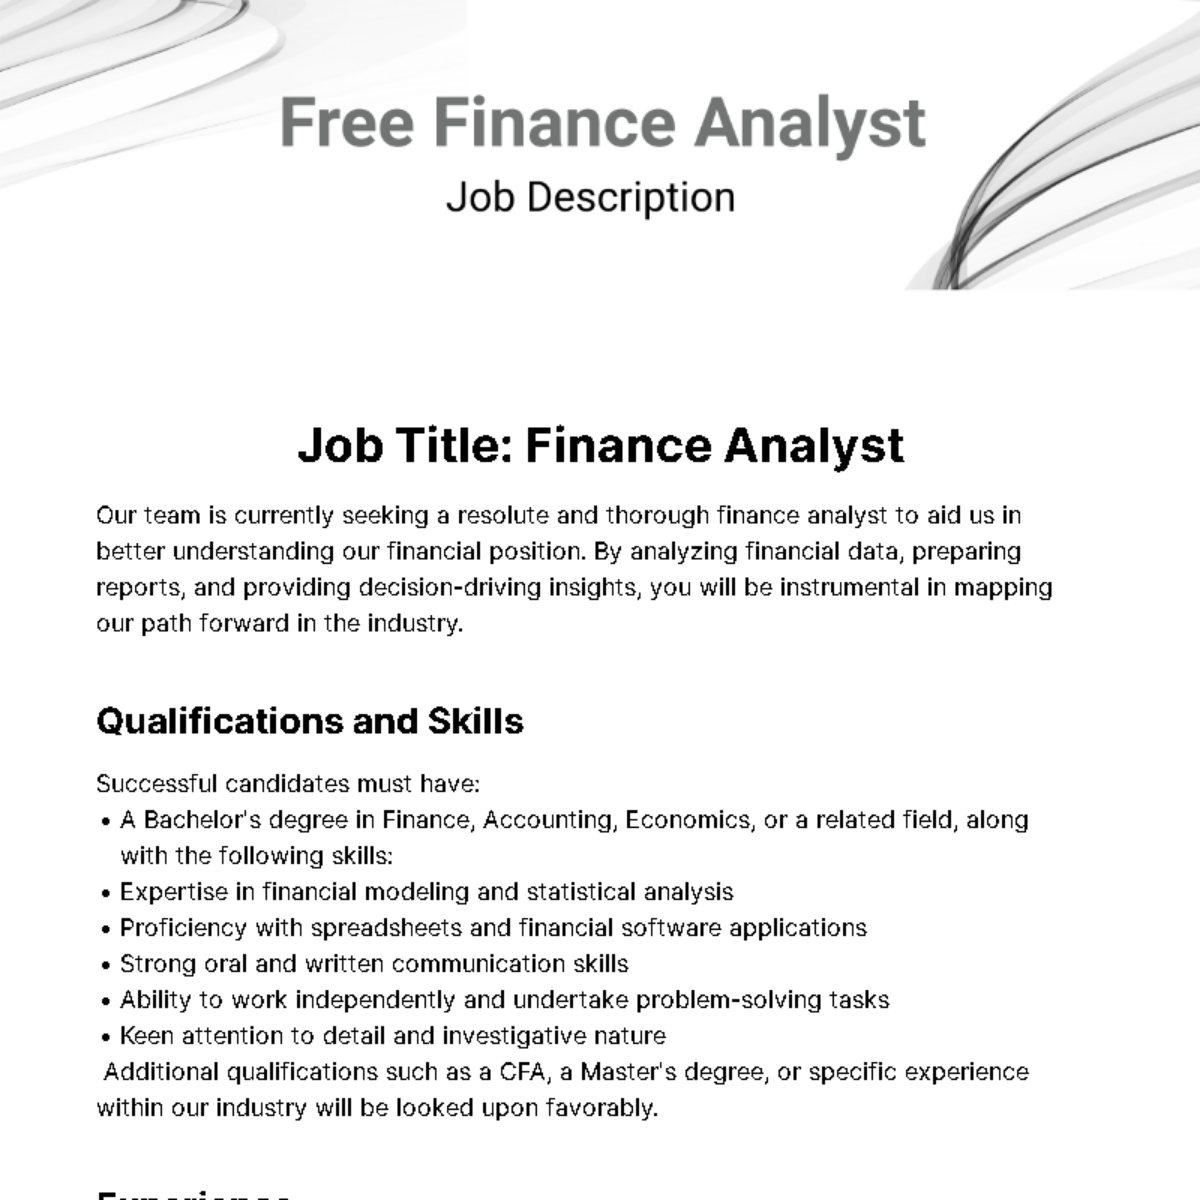 Finance Analyst Job Description Template